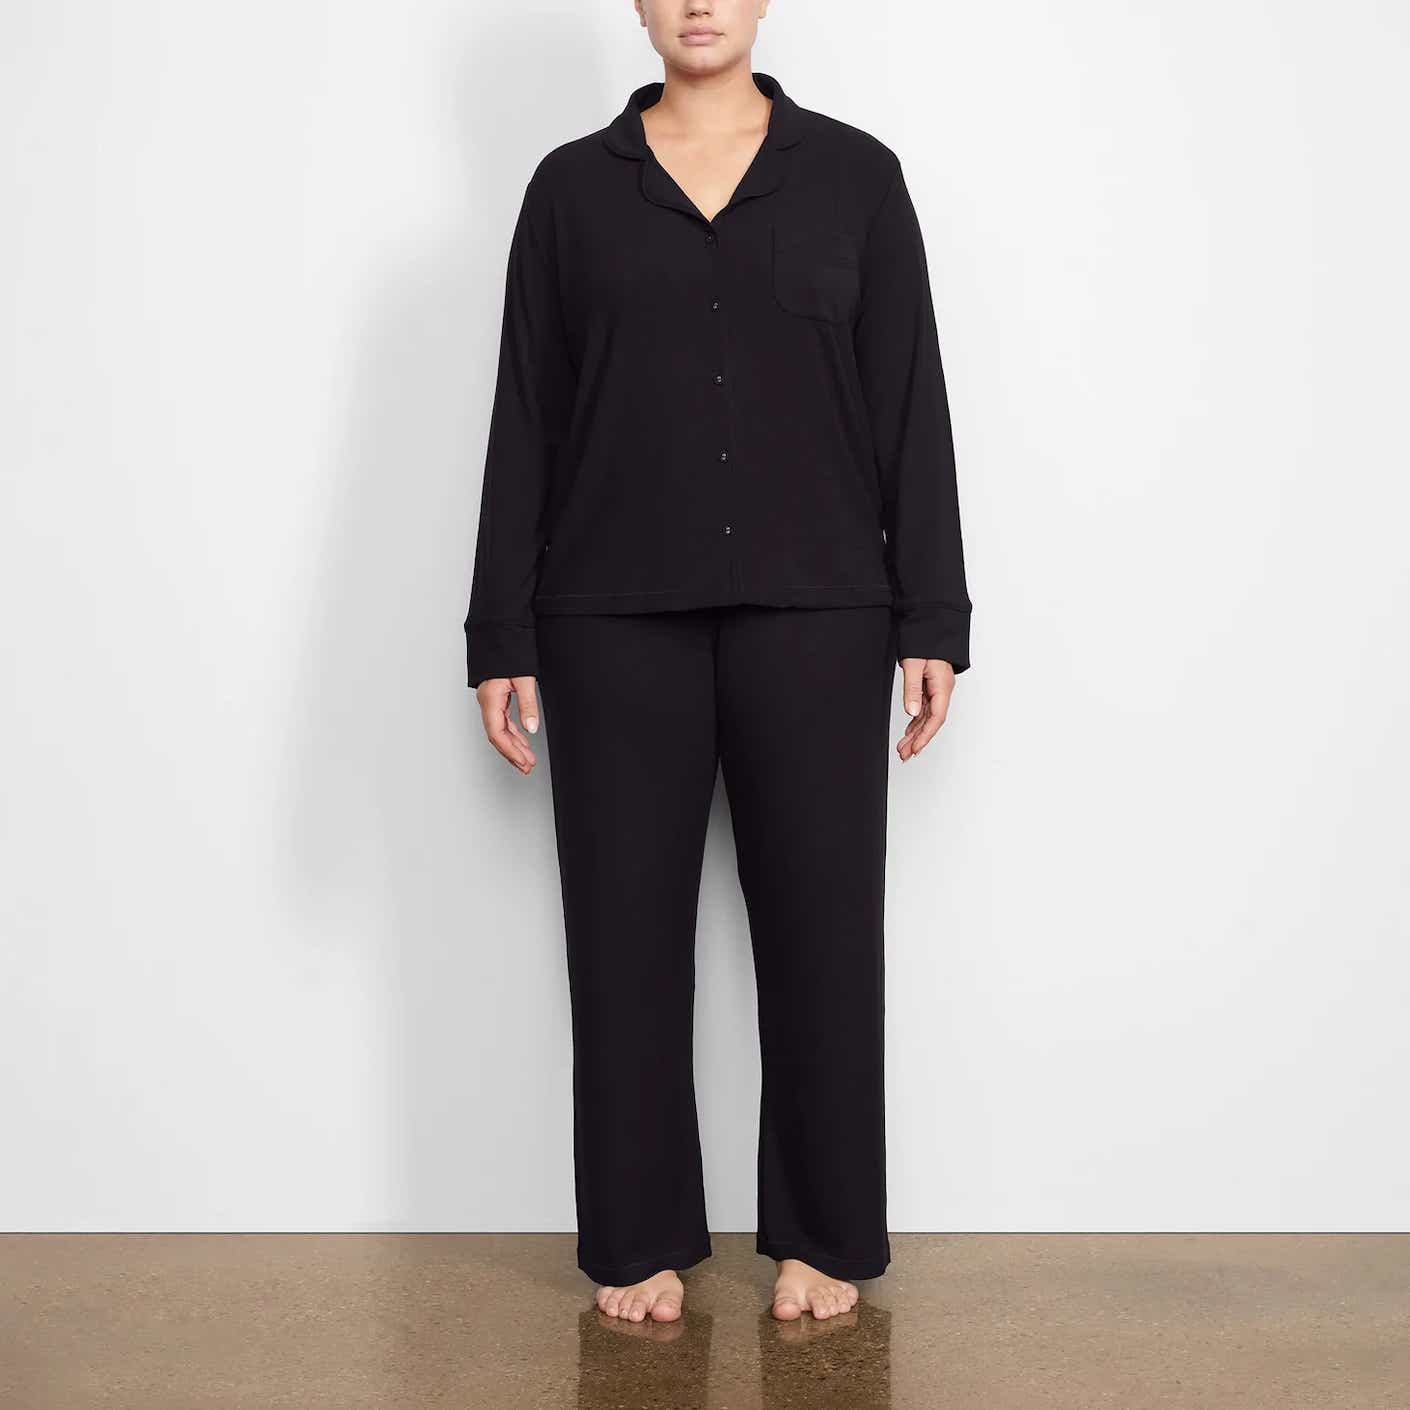 woman wearing black pajama set